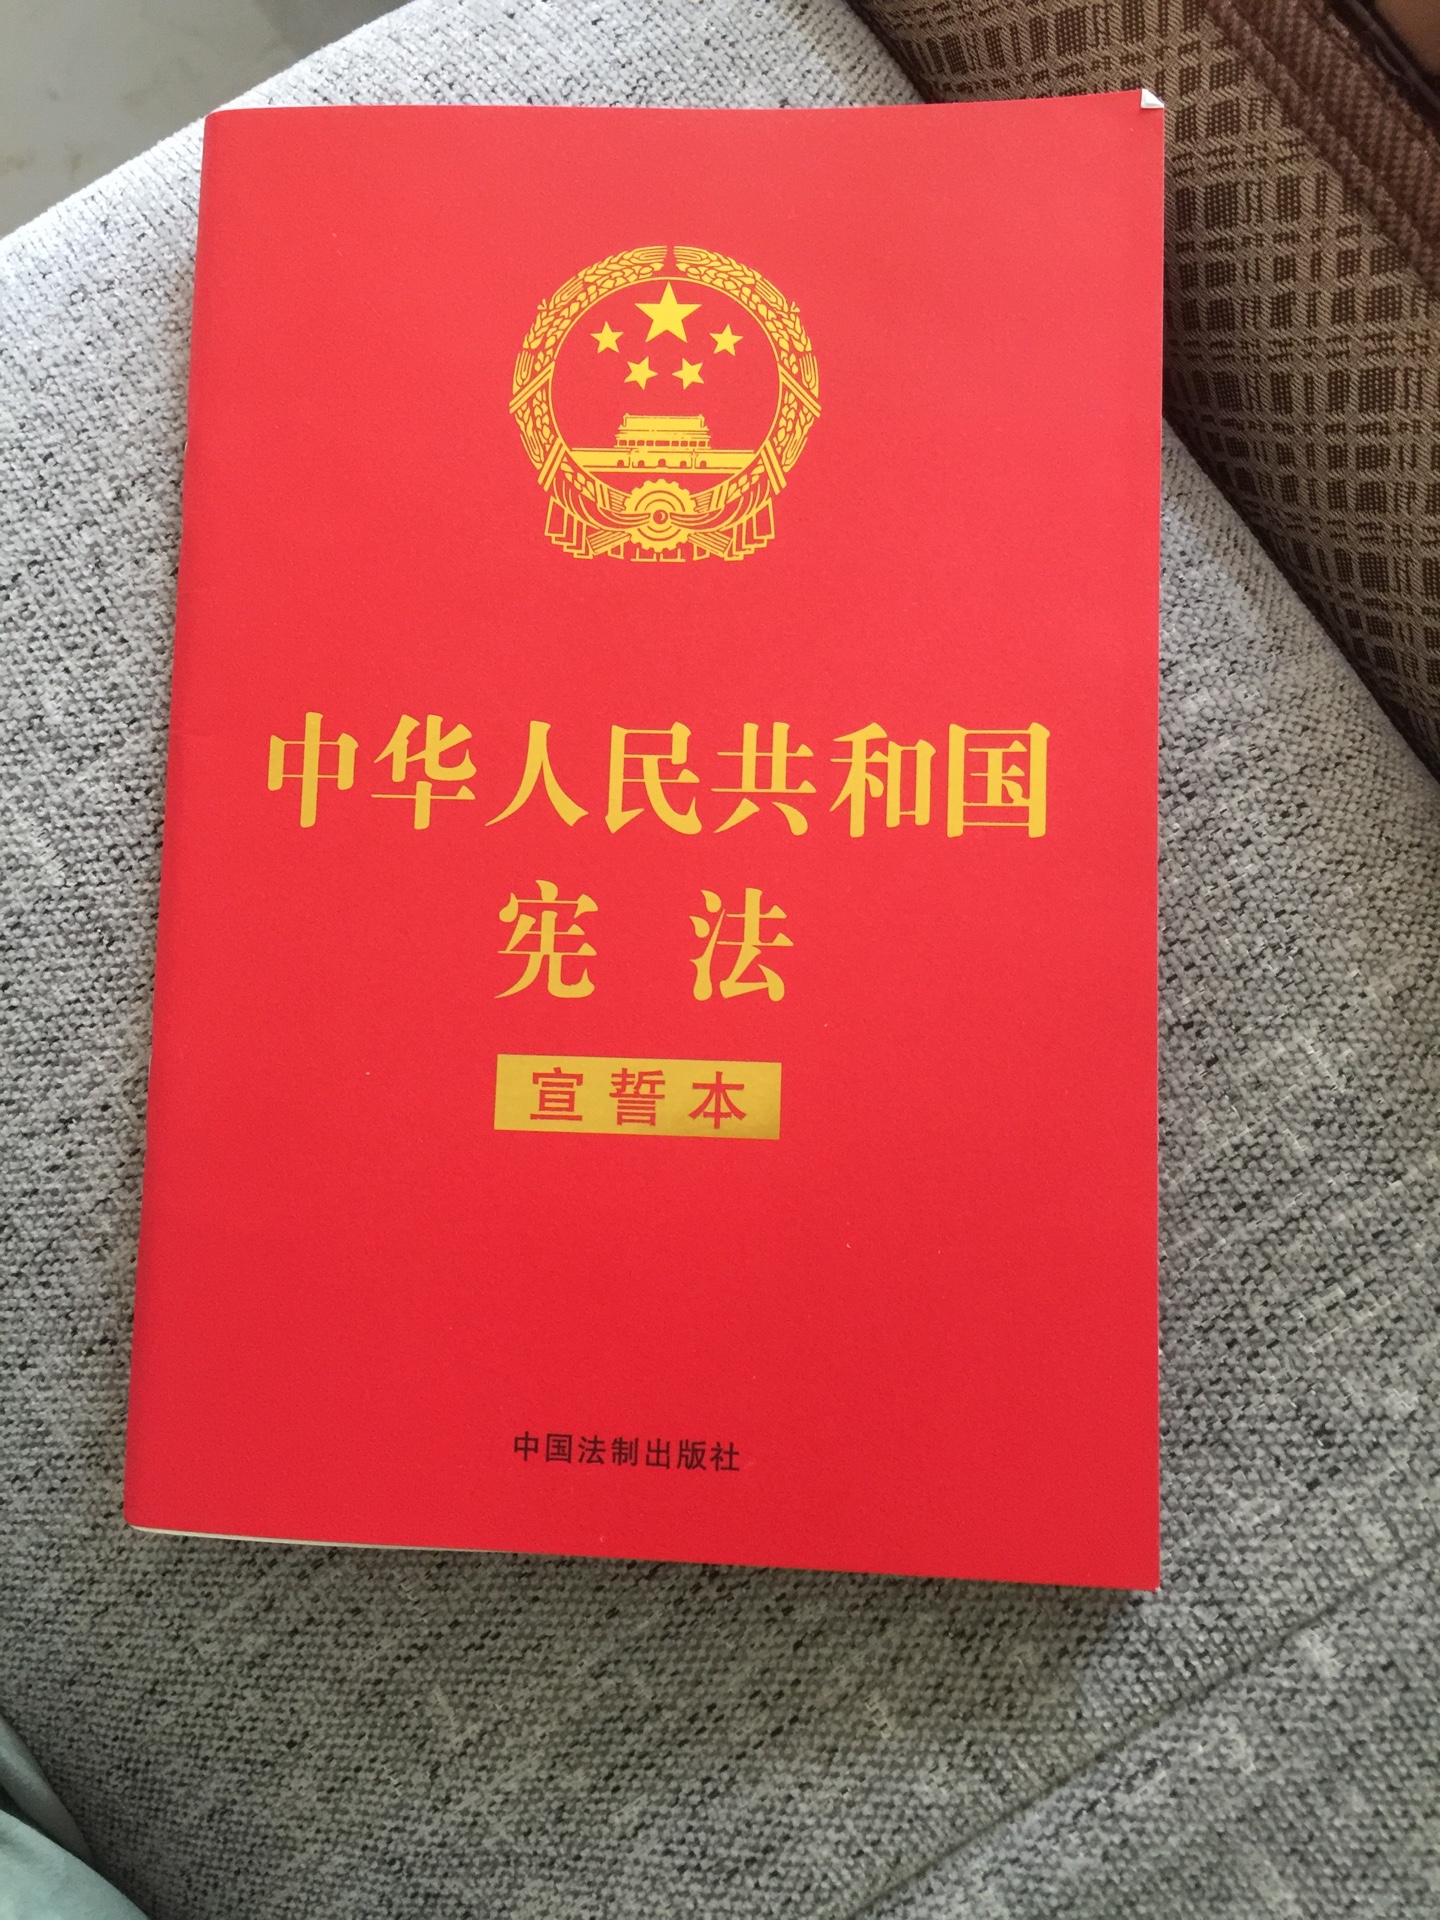 作为中国公民怎么能不了解国家的**呢，应该每个人人手一本。